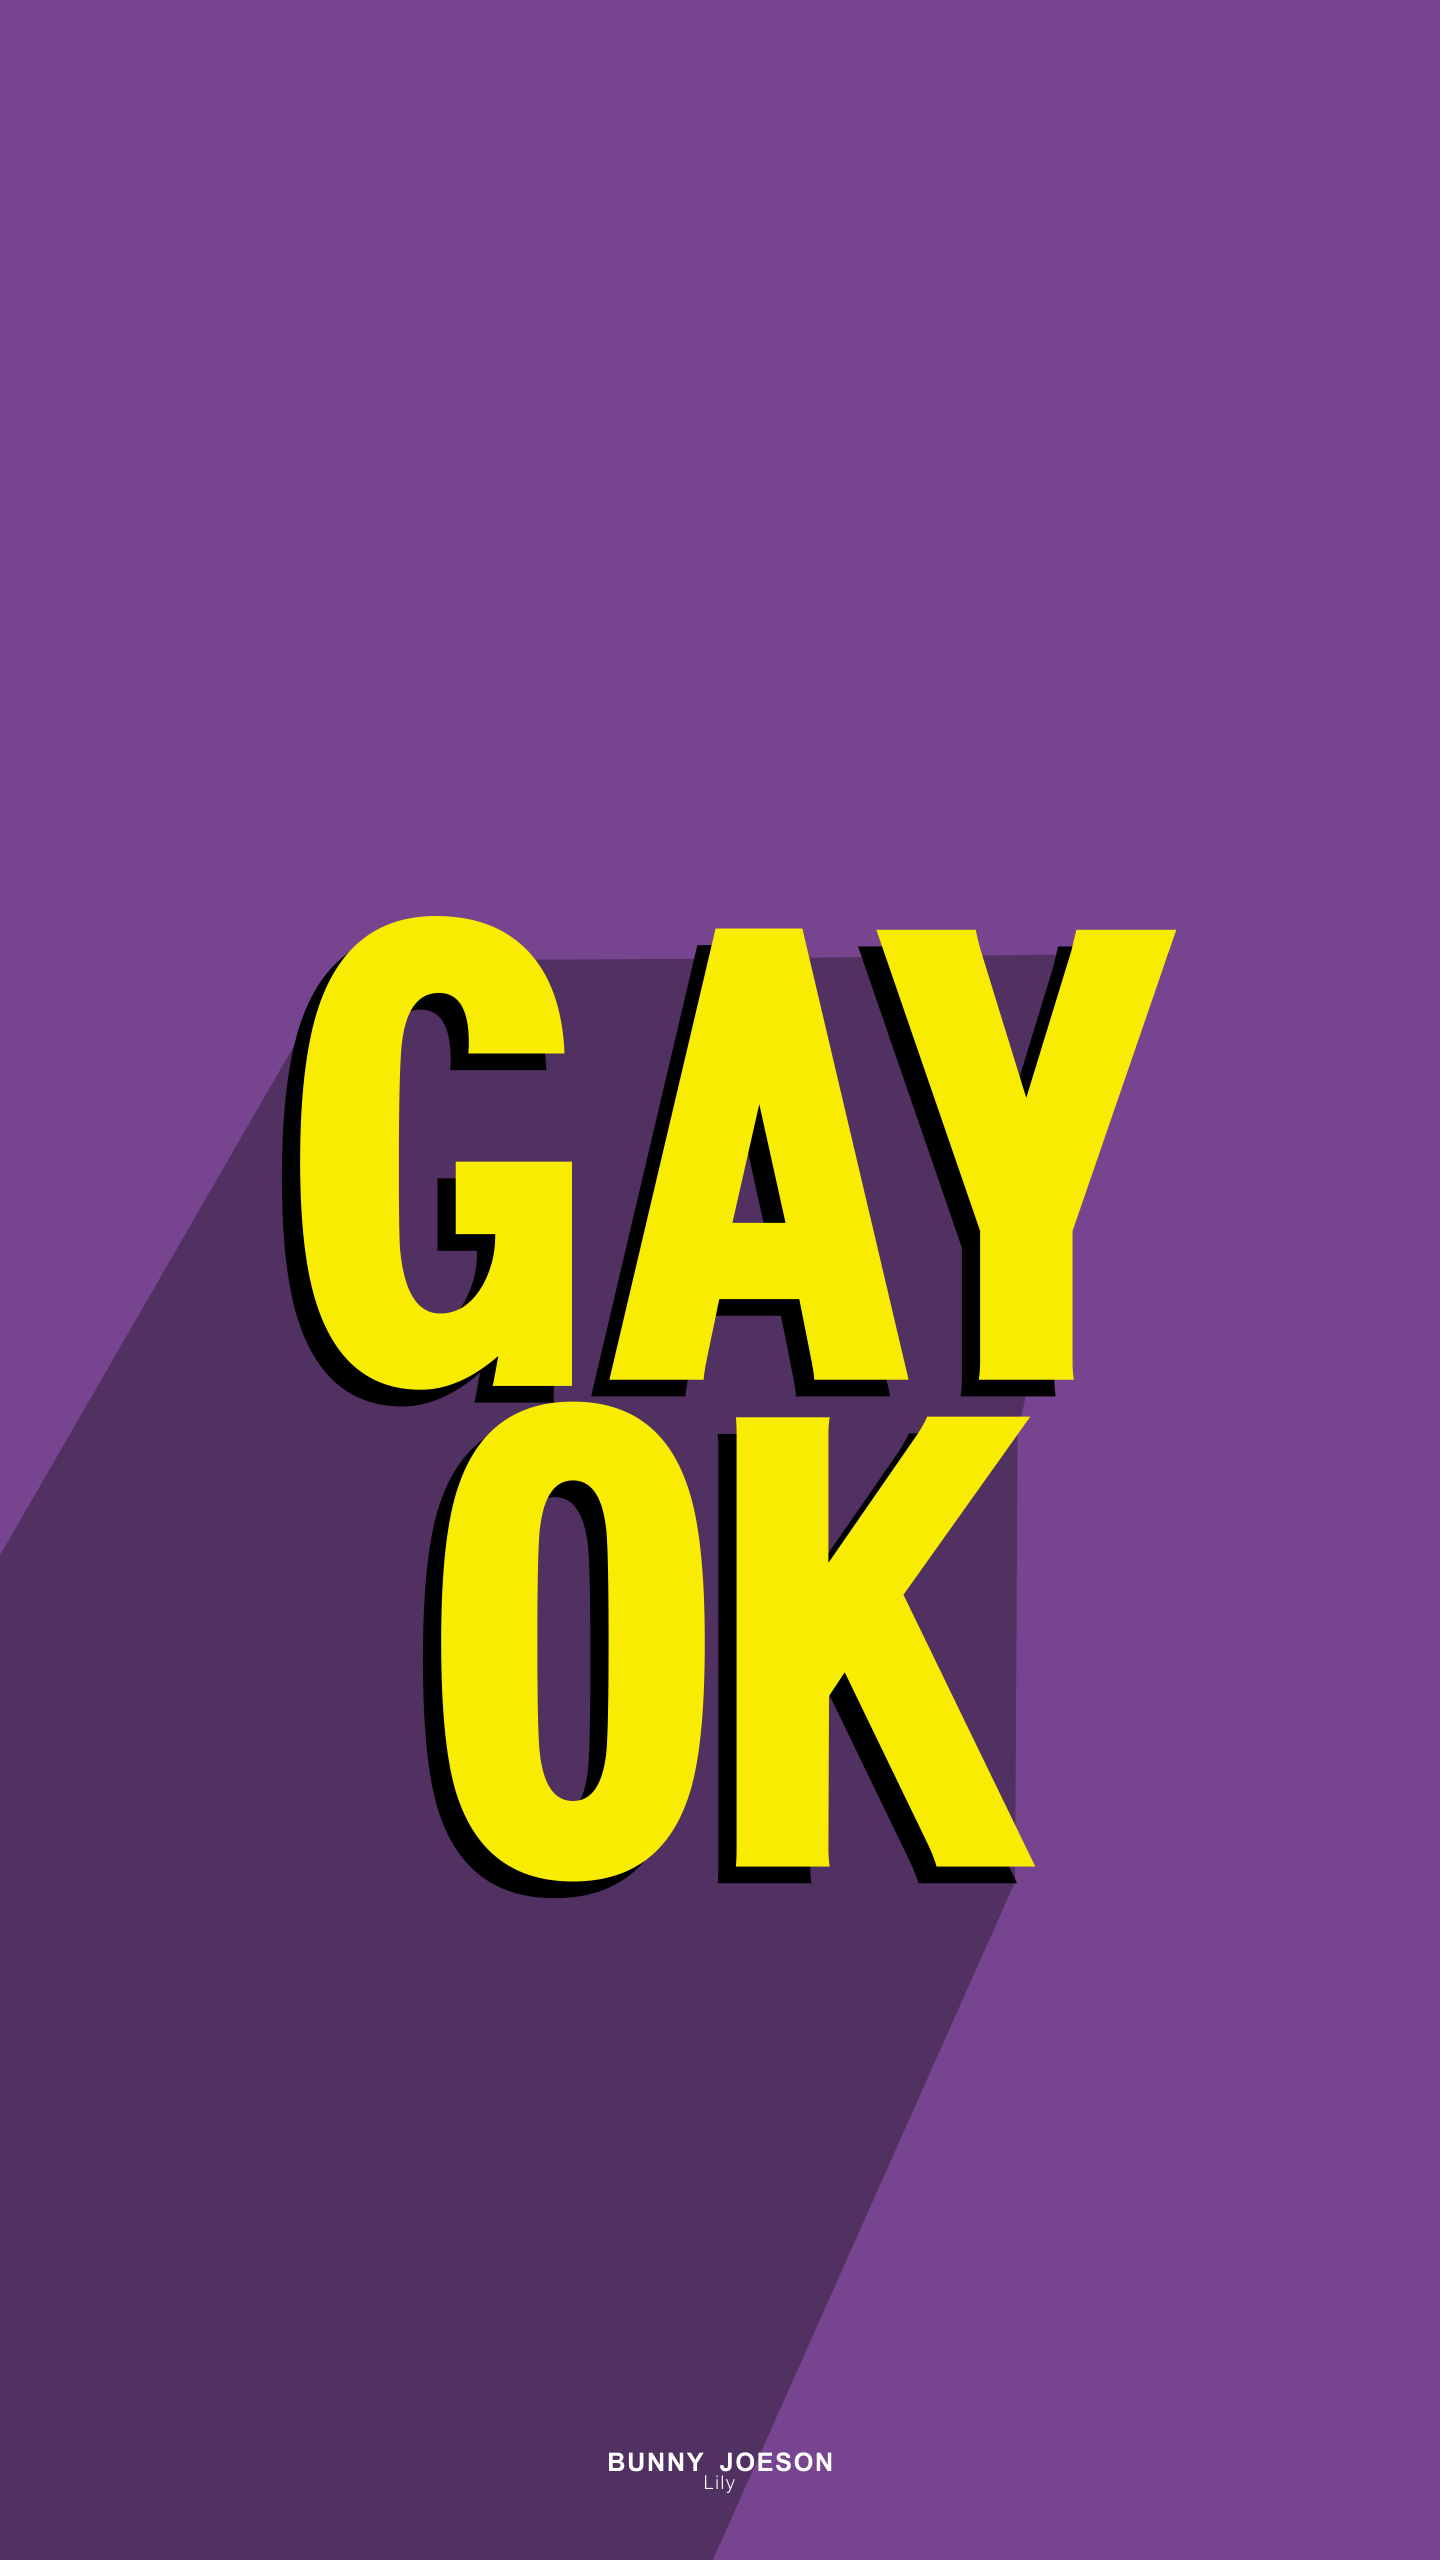 Free Download LGBT Wallpaper HD